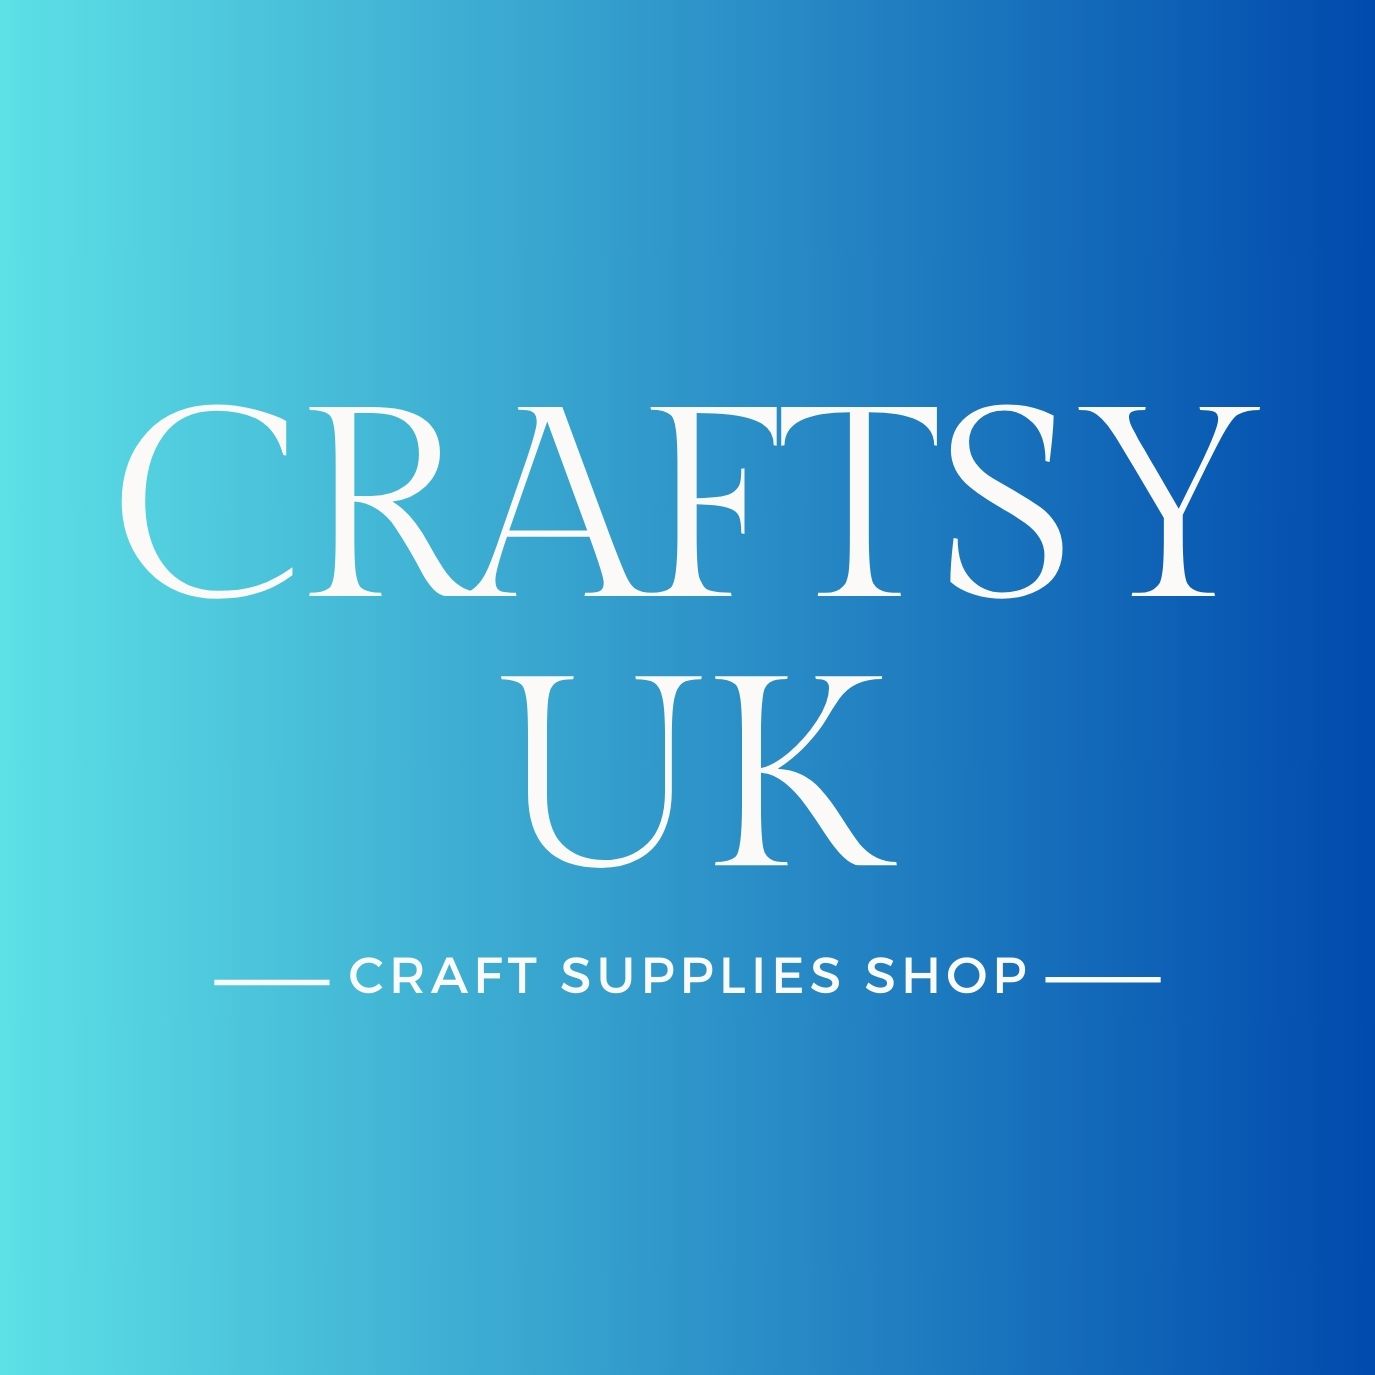 craftsy logo craft supplies shop